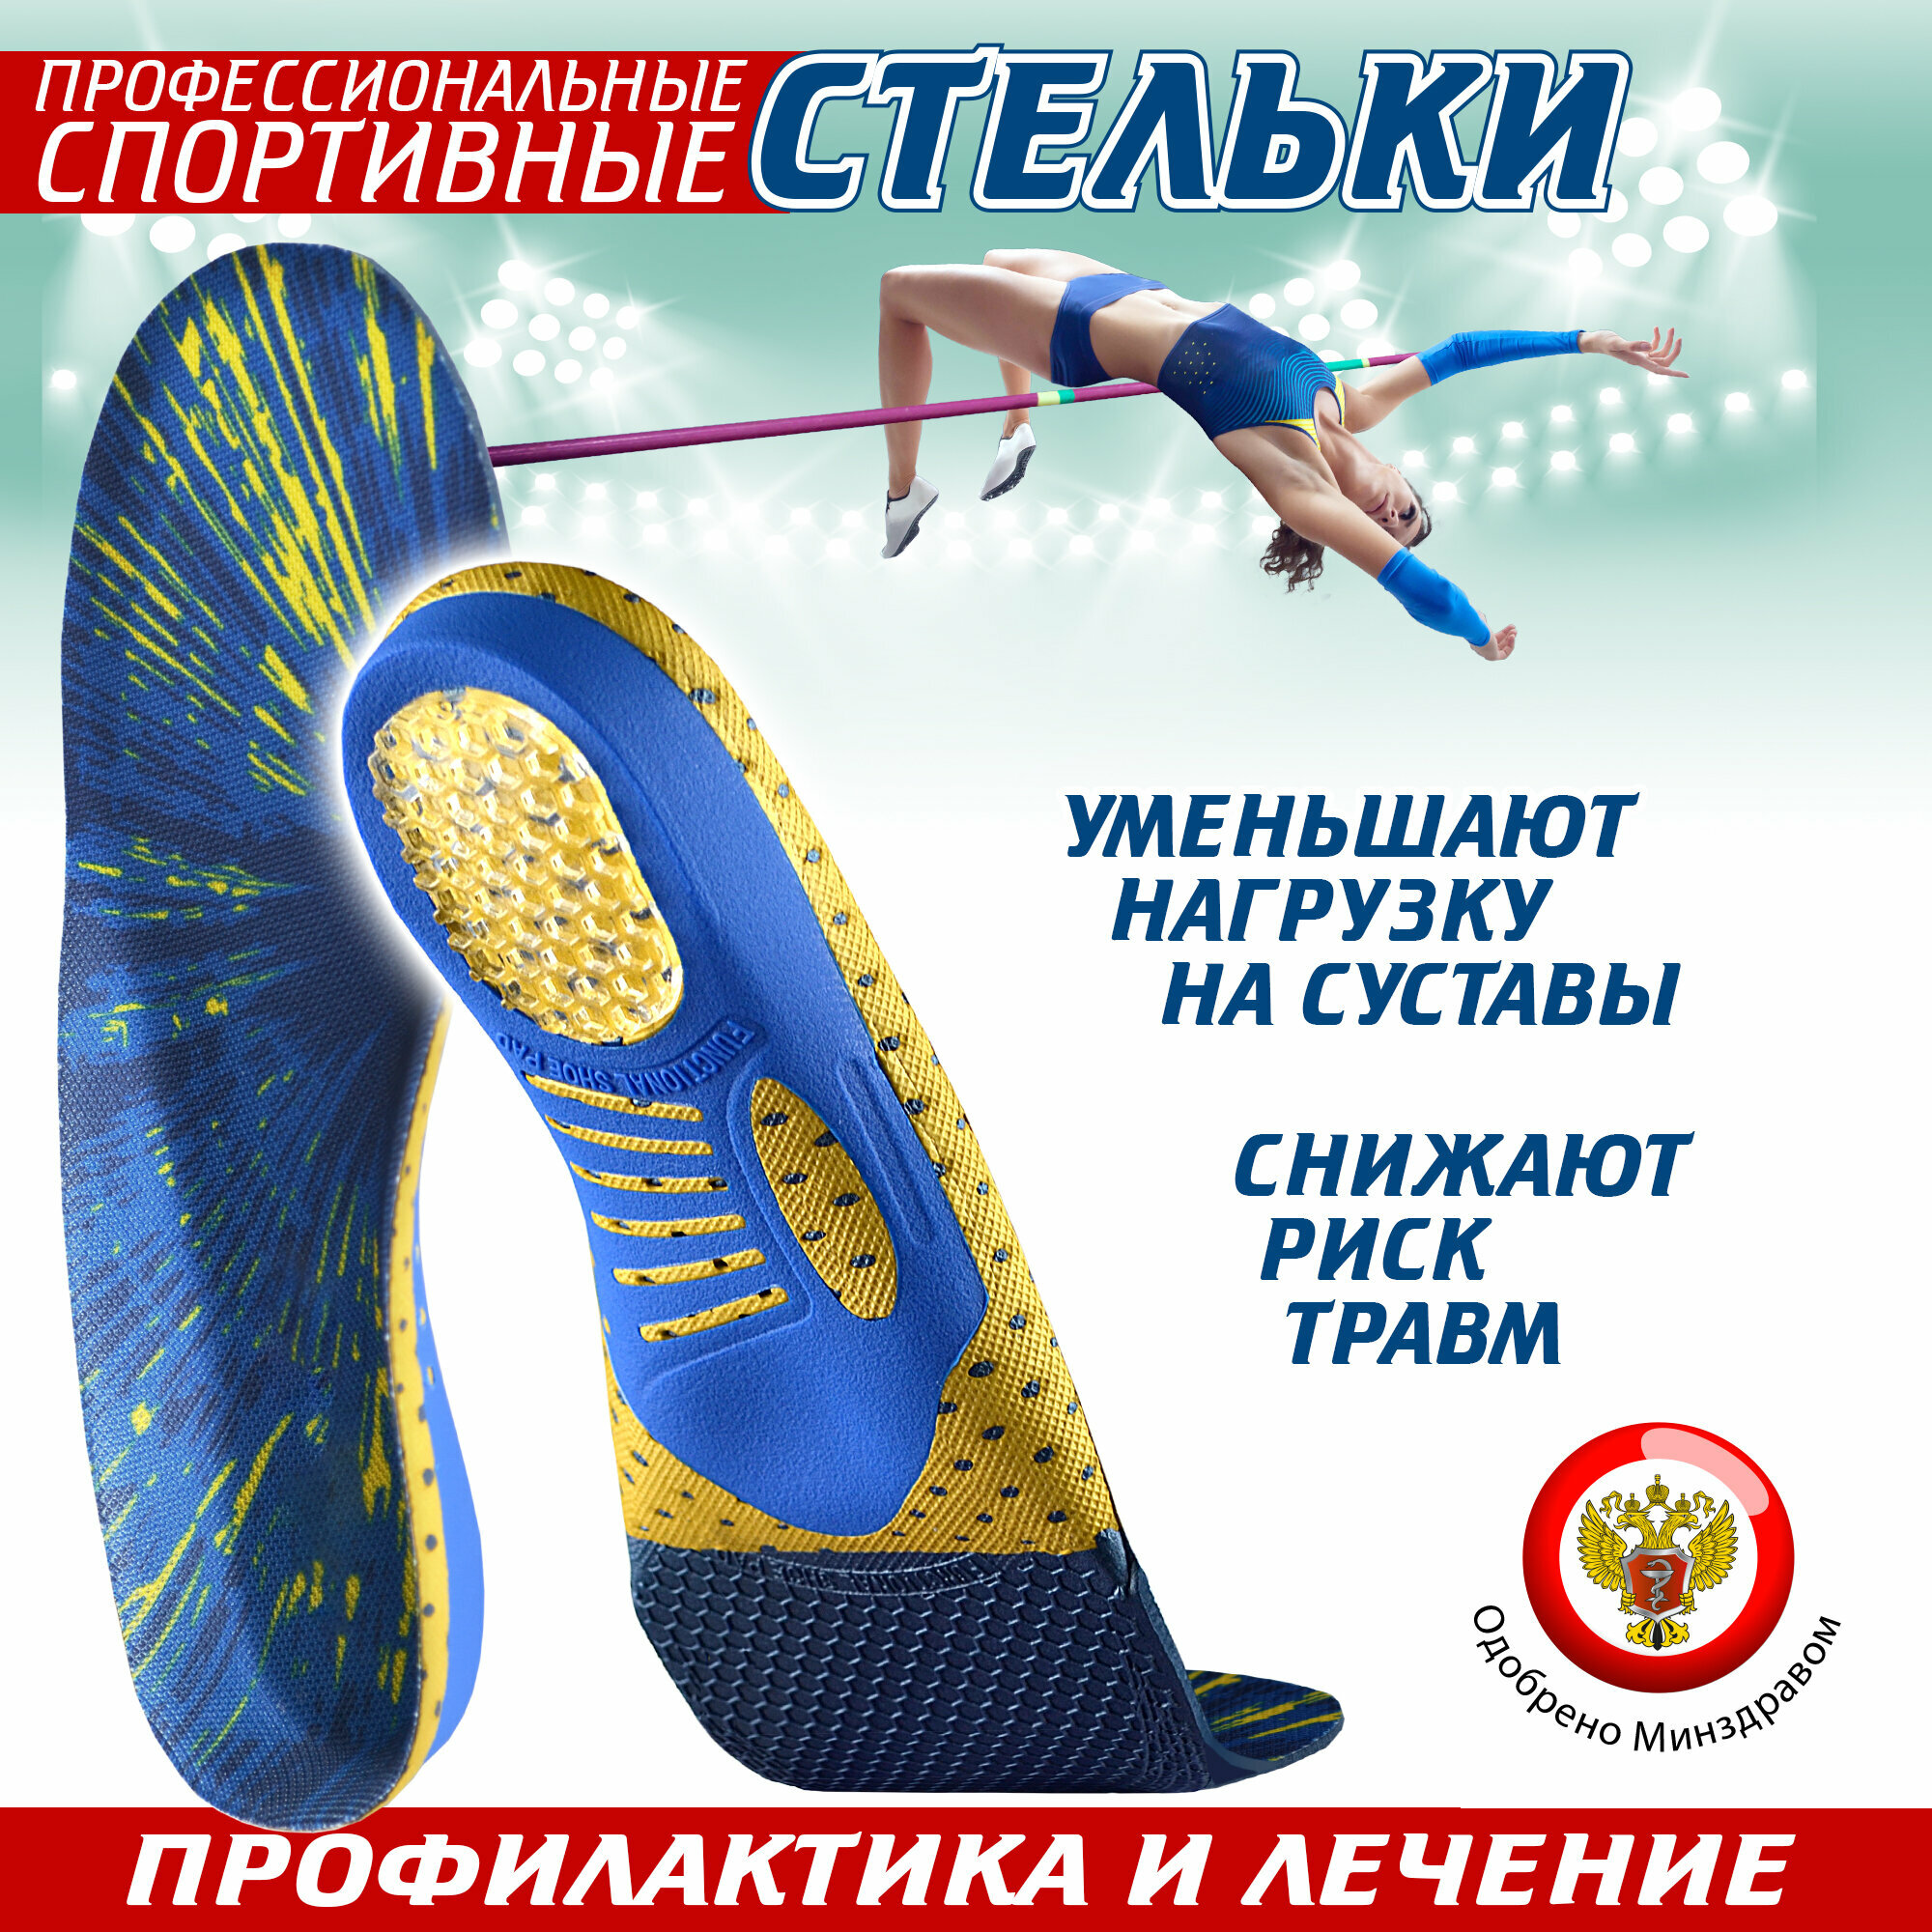 Ортопедические стельки спортивные Sport, для обуви (43)